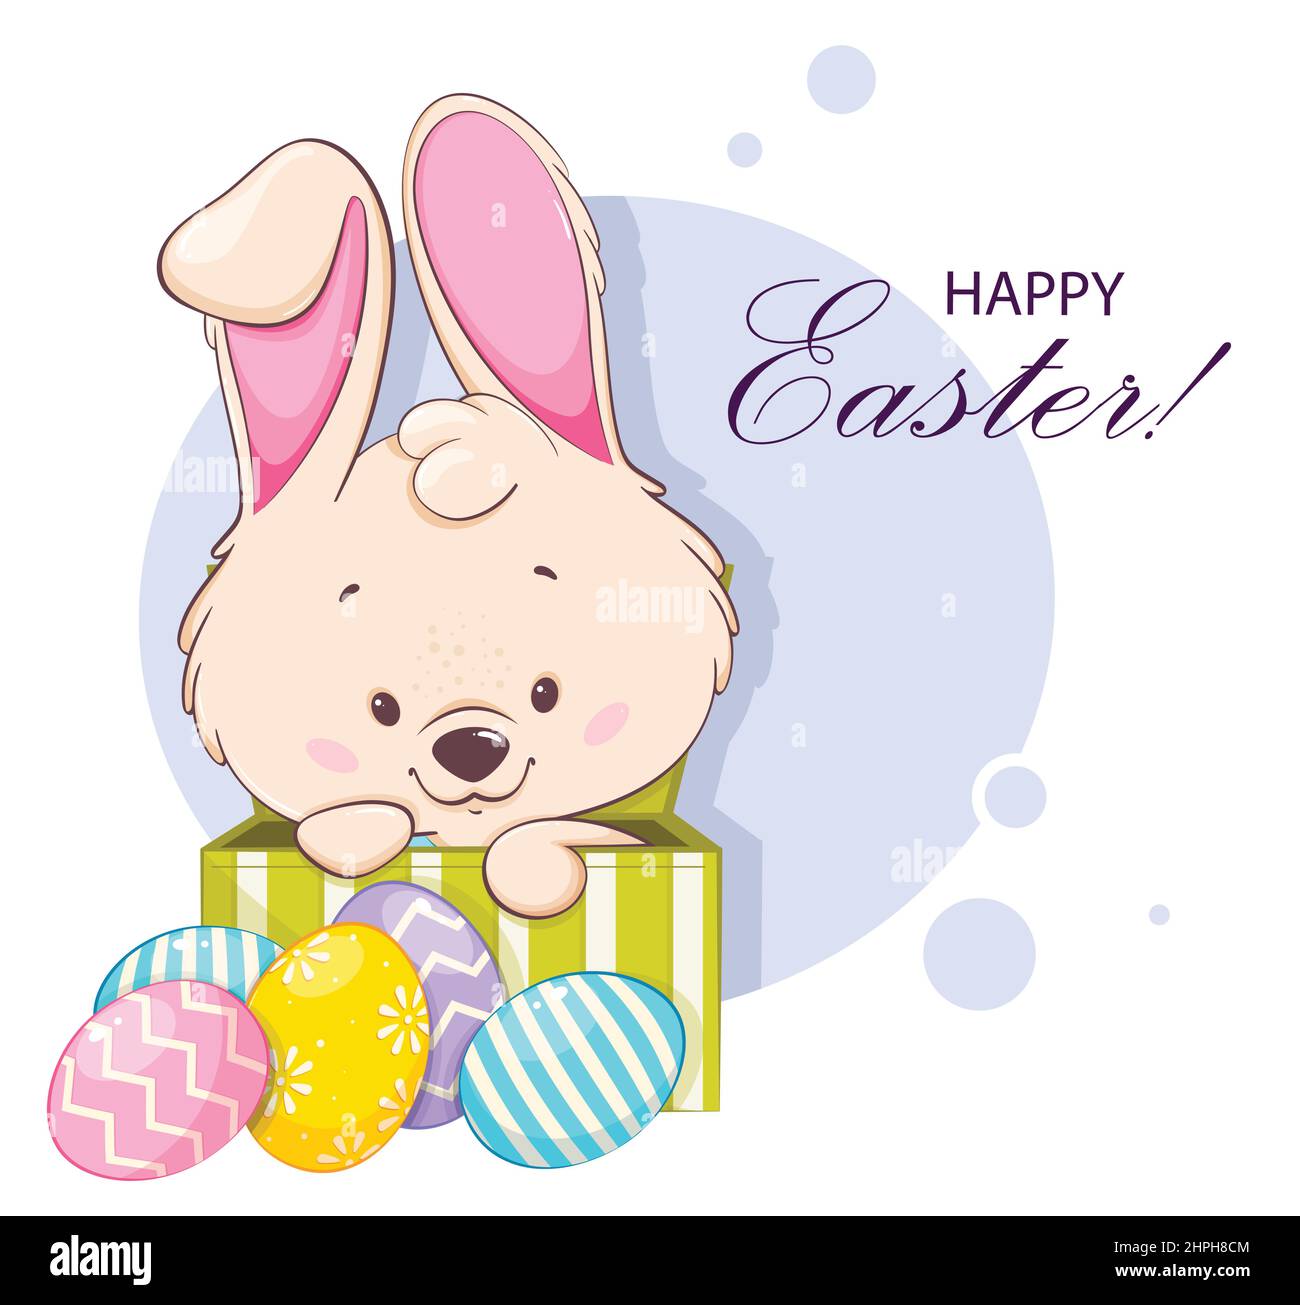 Frohe Ostern Grußkarte. Lustige Zeichentrickfigur Kaninchen sitzen in einer Box in der Nähe von farbigen Eiern. Osterhase. Vektorgrafik für Aktien Stock Vektor